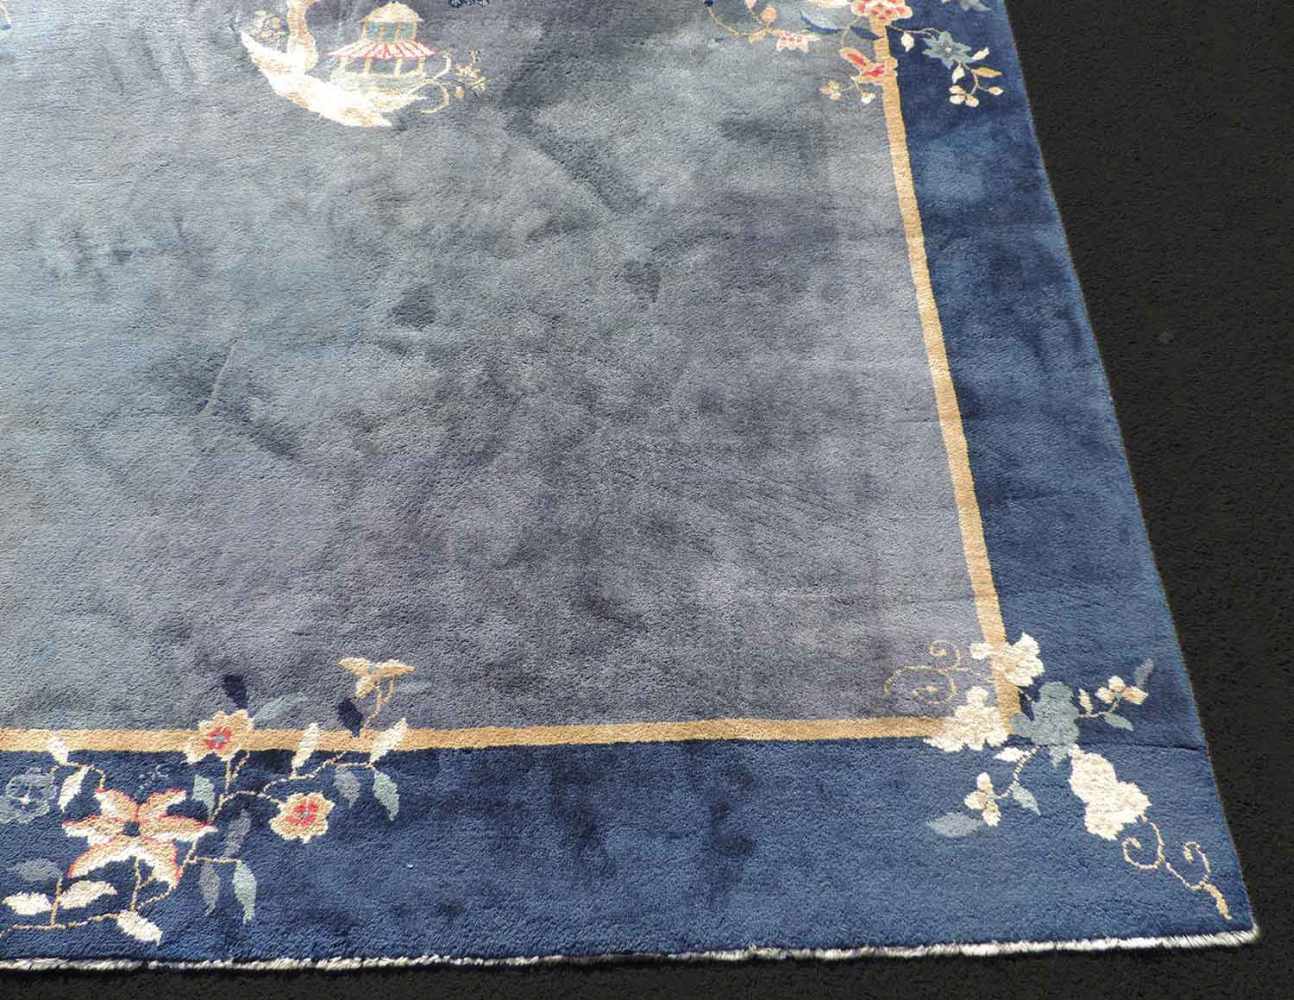 Peking Teppich. China. Antik. Um 1920 361 cm x 267 cm. Handgeknüpft. Mancesterwolle auf Baumwolle. - Image 3 of 8